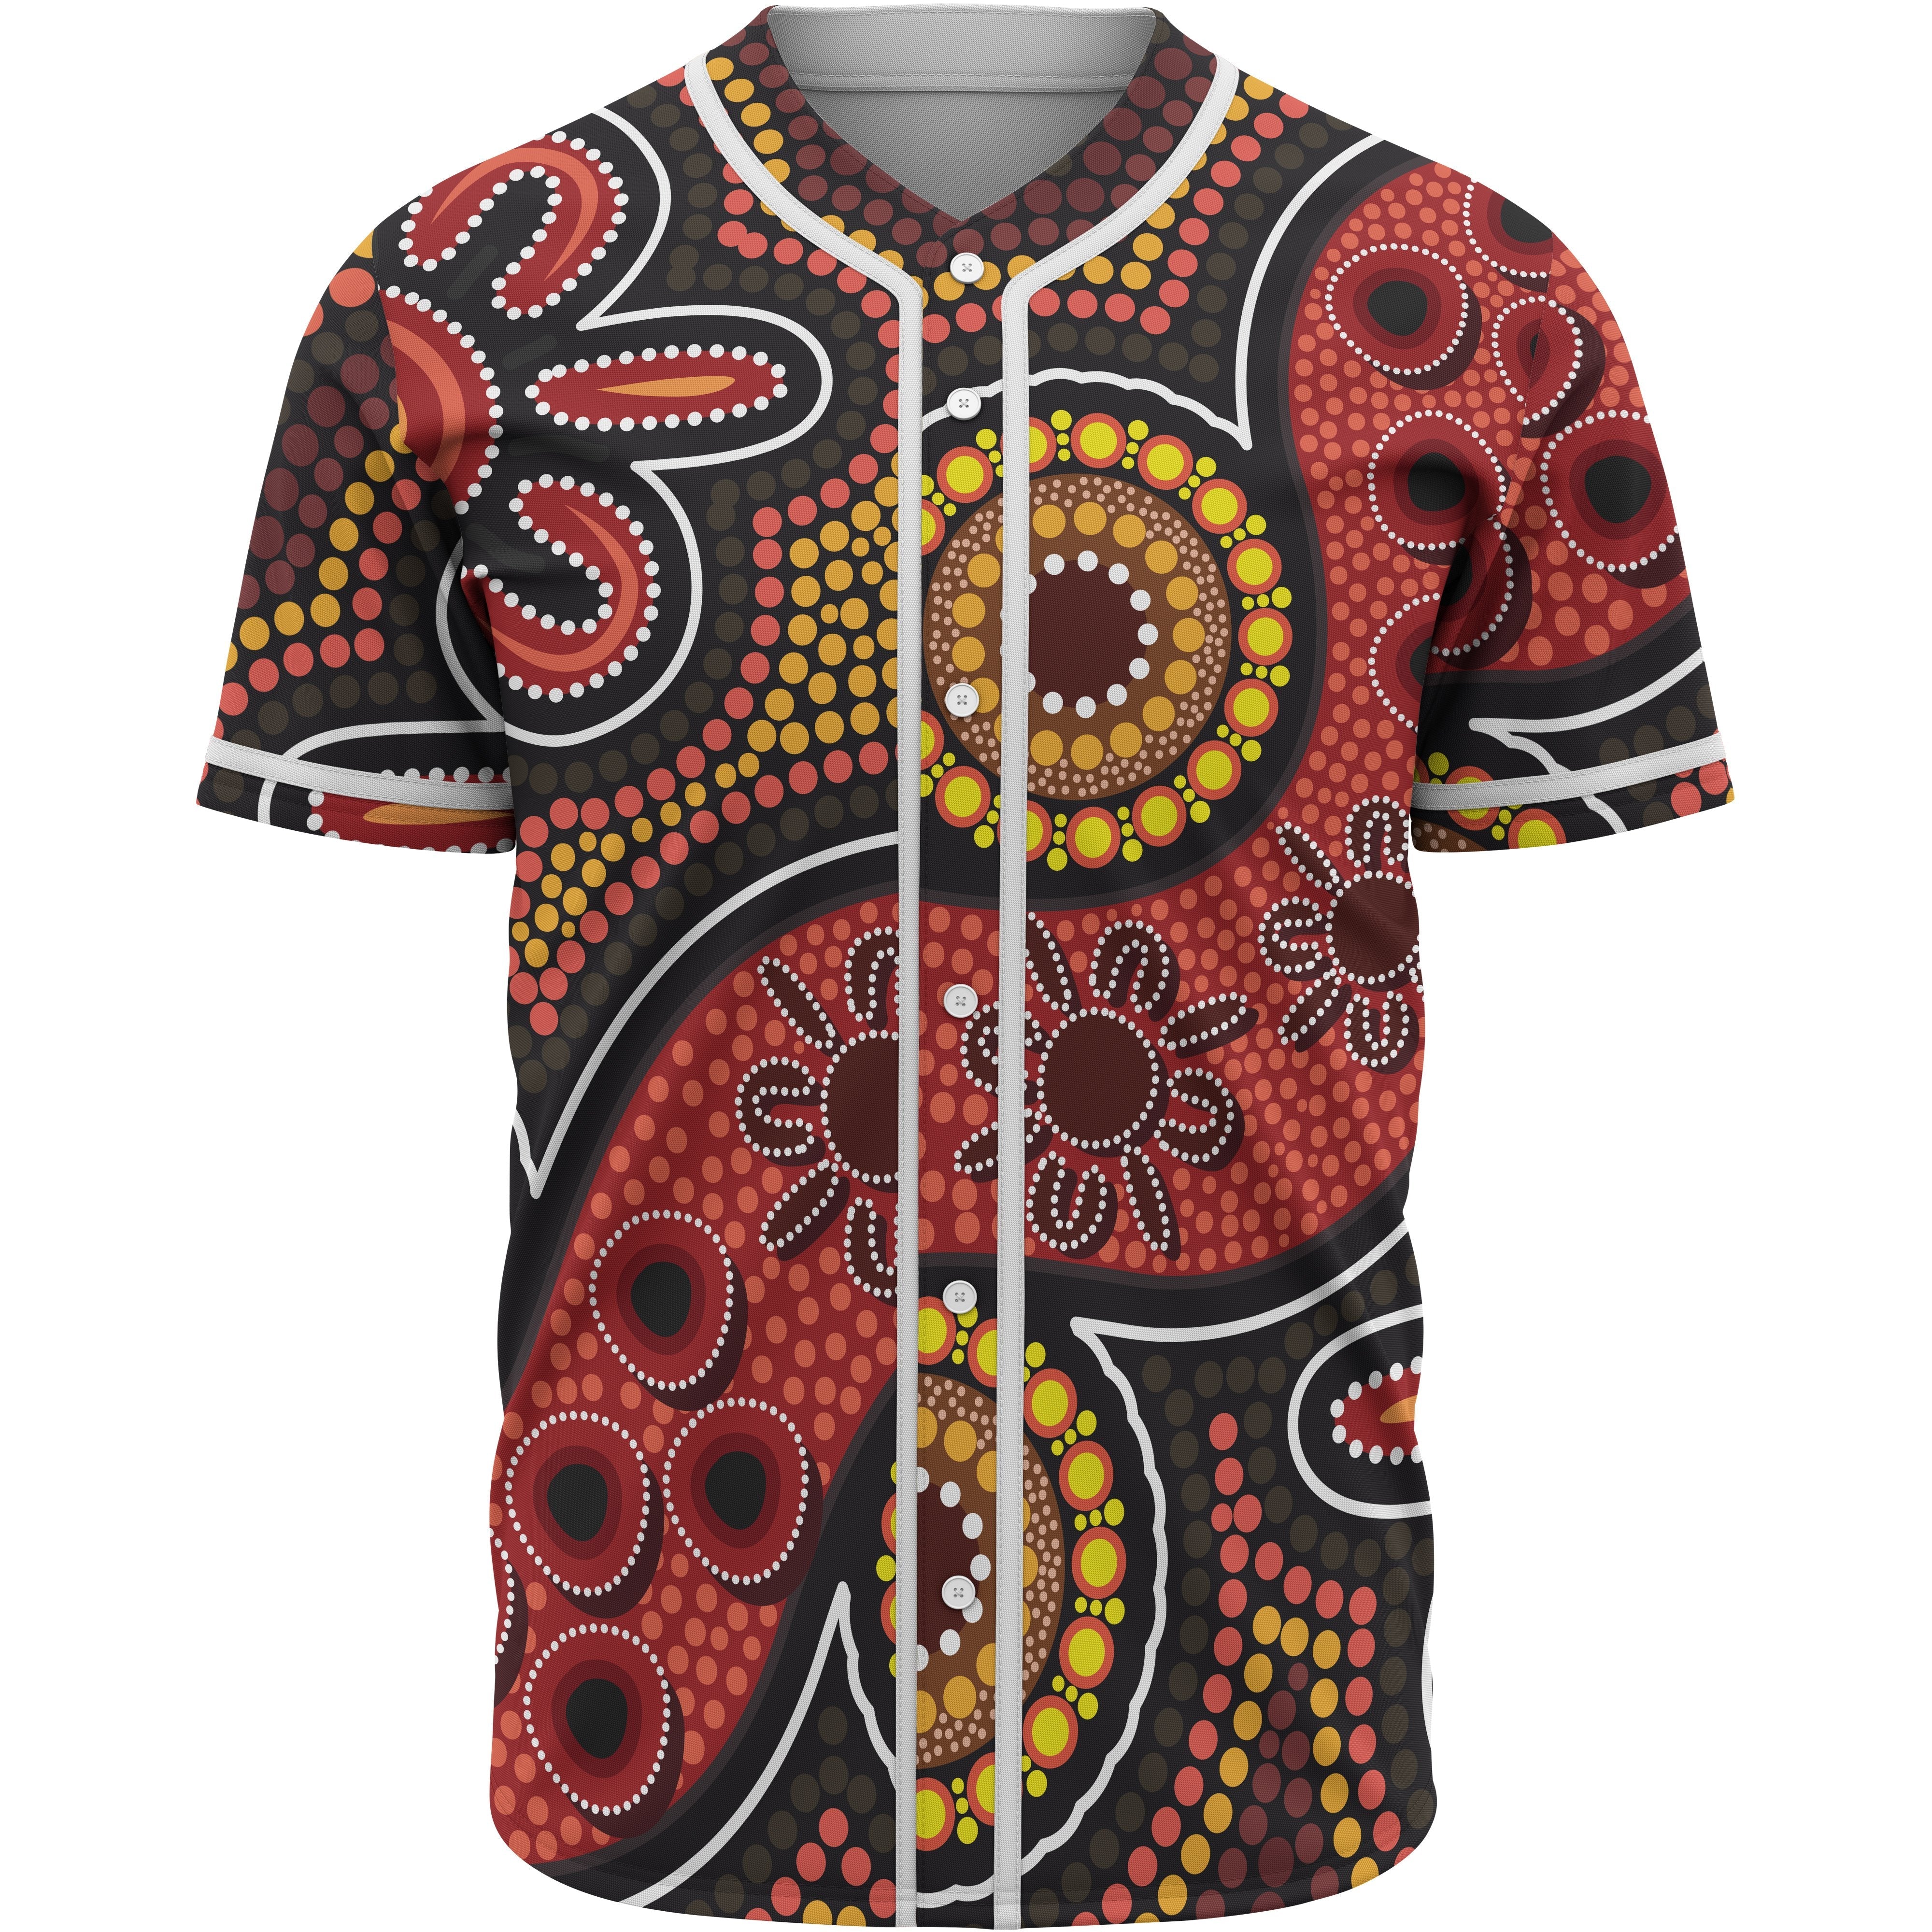 aboriginal-baseball-shirt-indigenous-circle-dot-painting-style